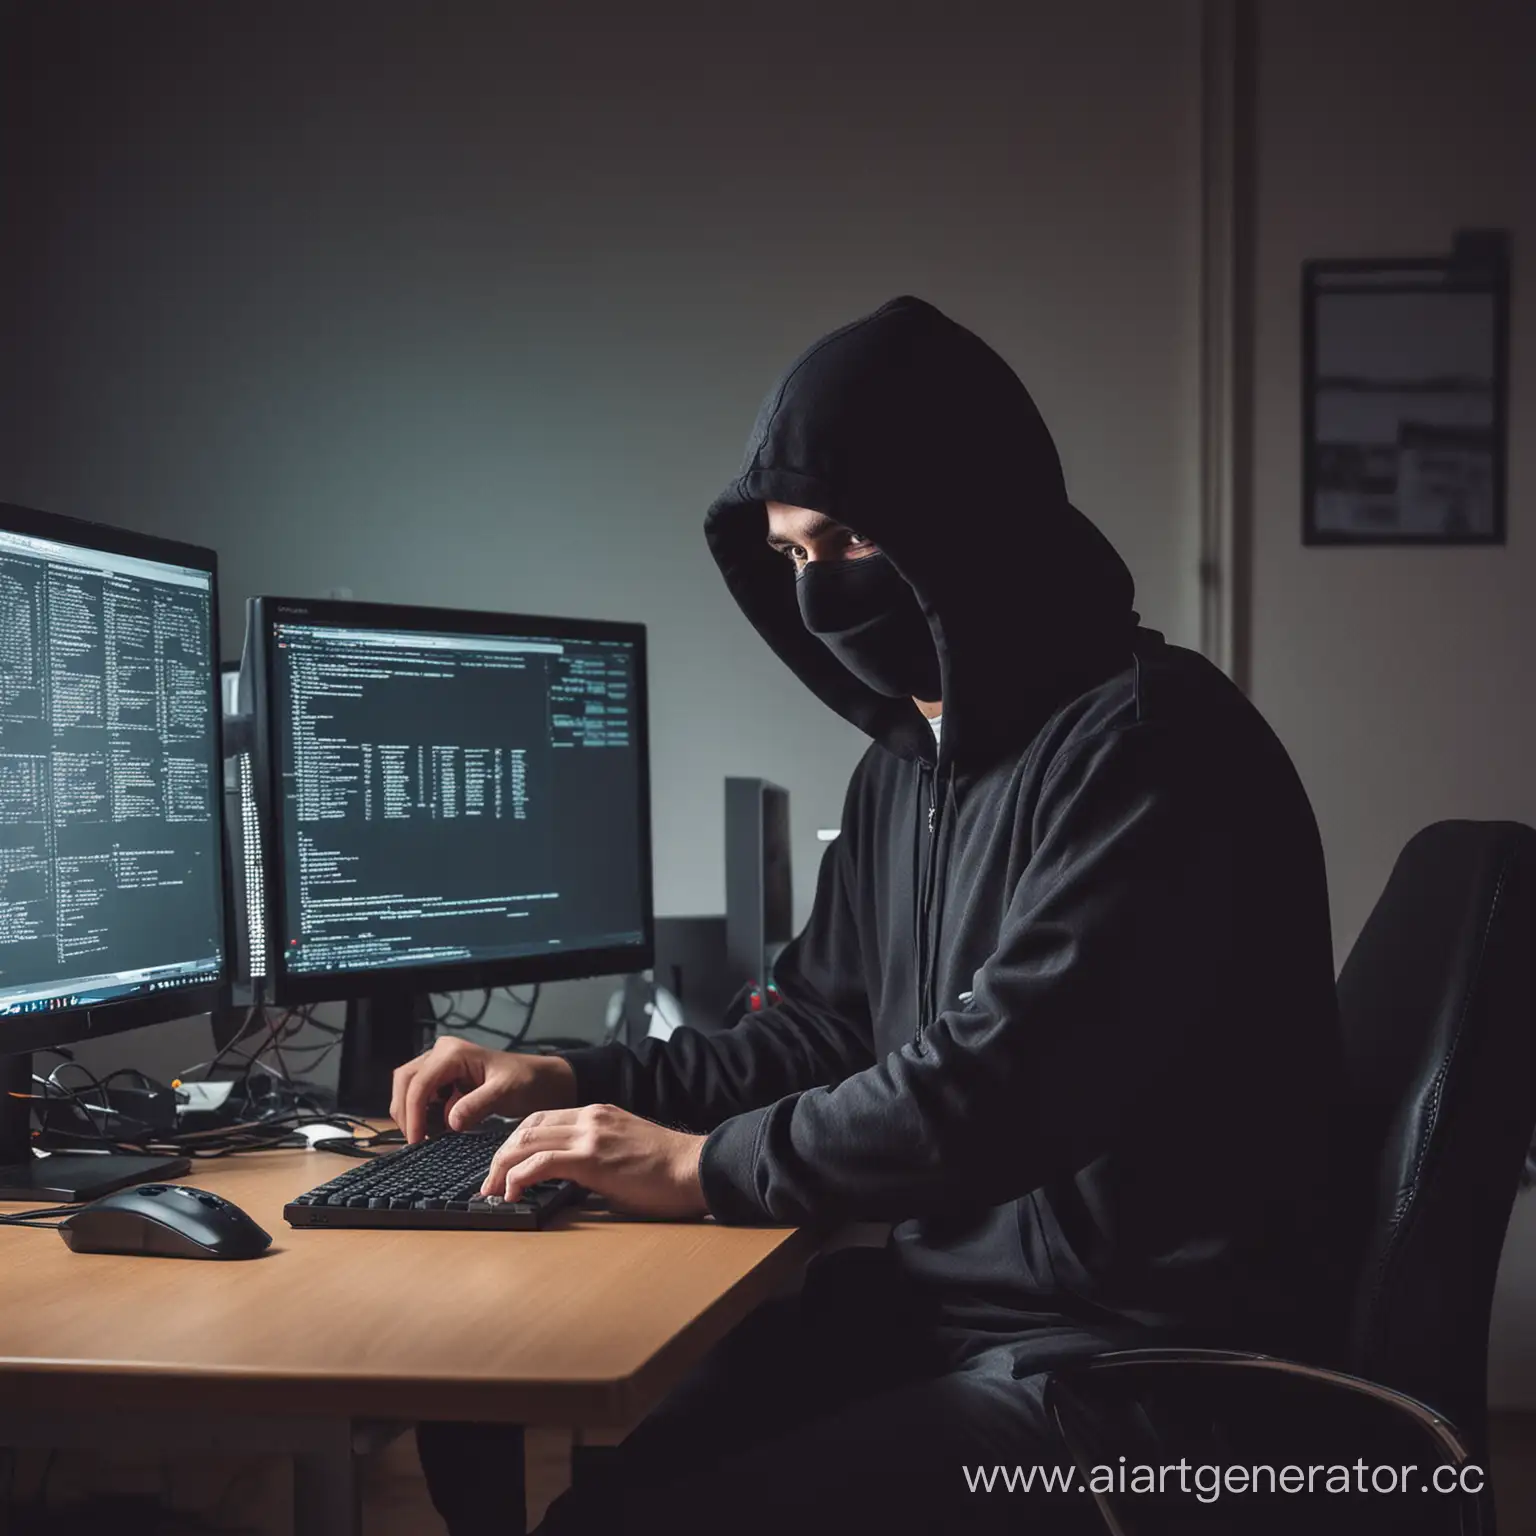 хакер в комнате с множеством компьютеров